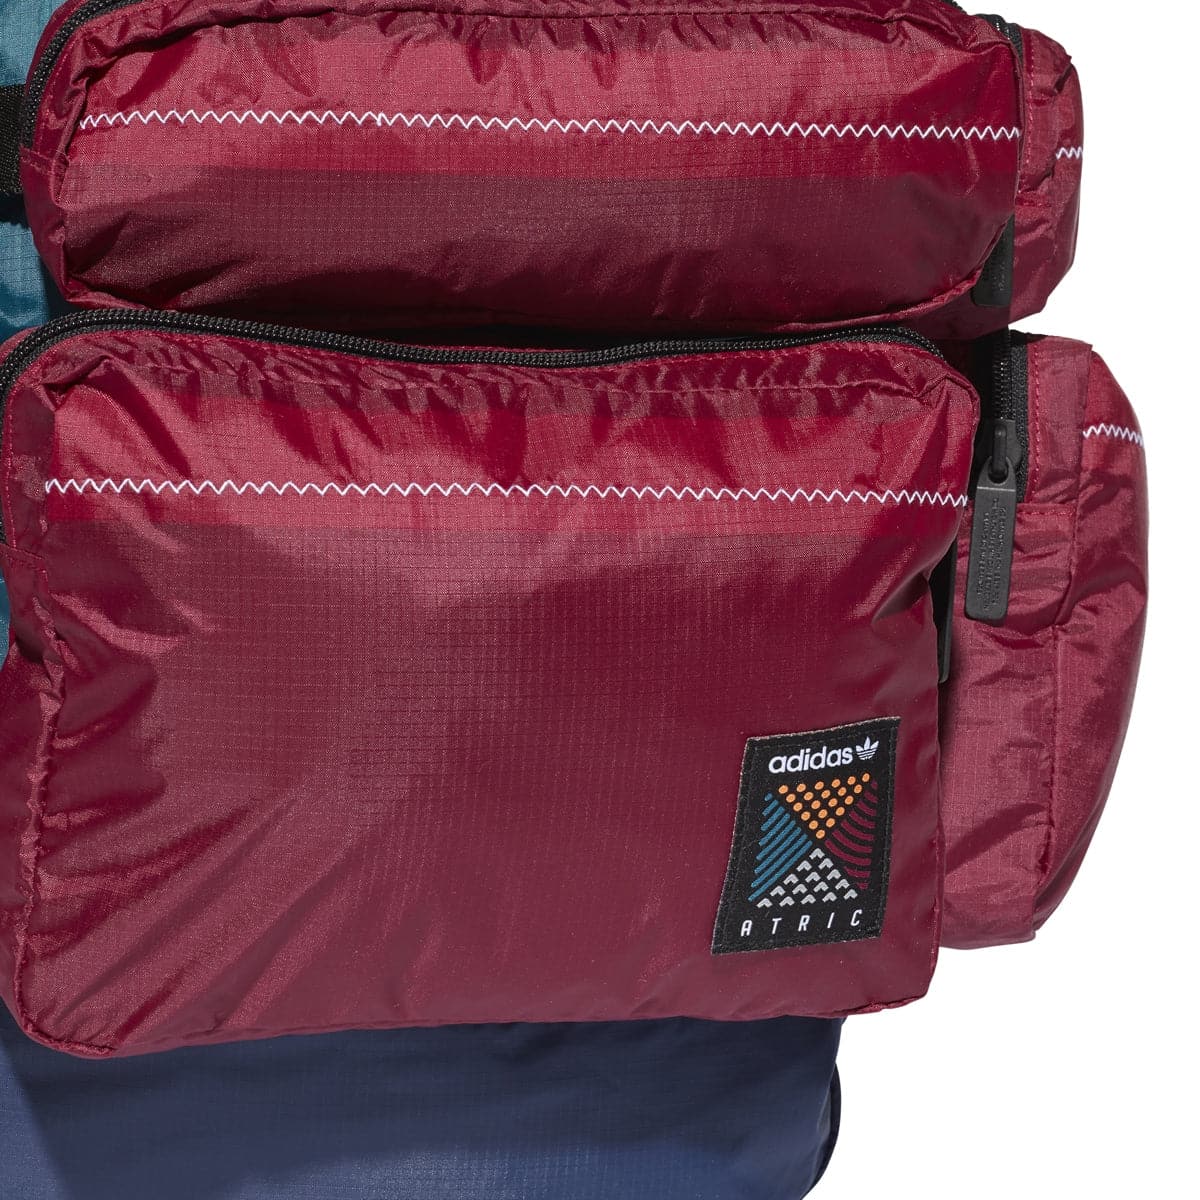 adidas Backpack L 'Atric' (Noble Indigo)  - Allike Store